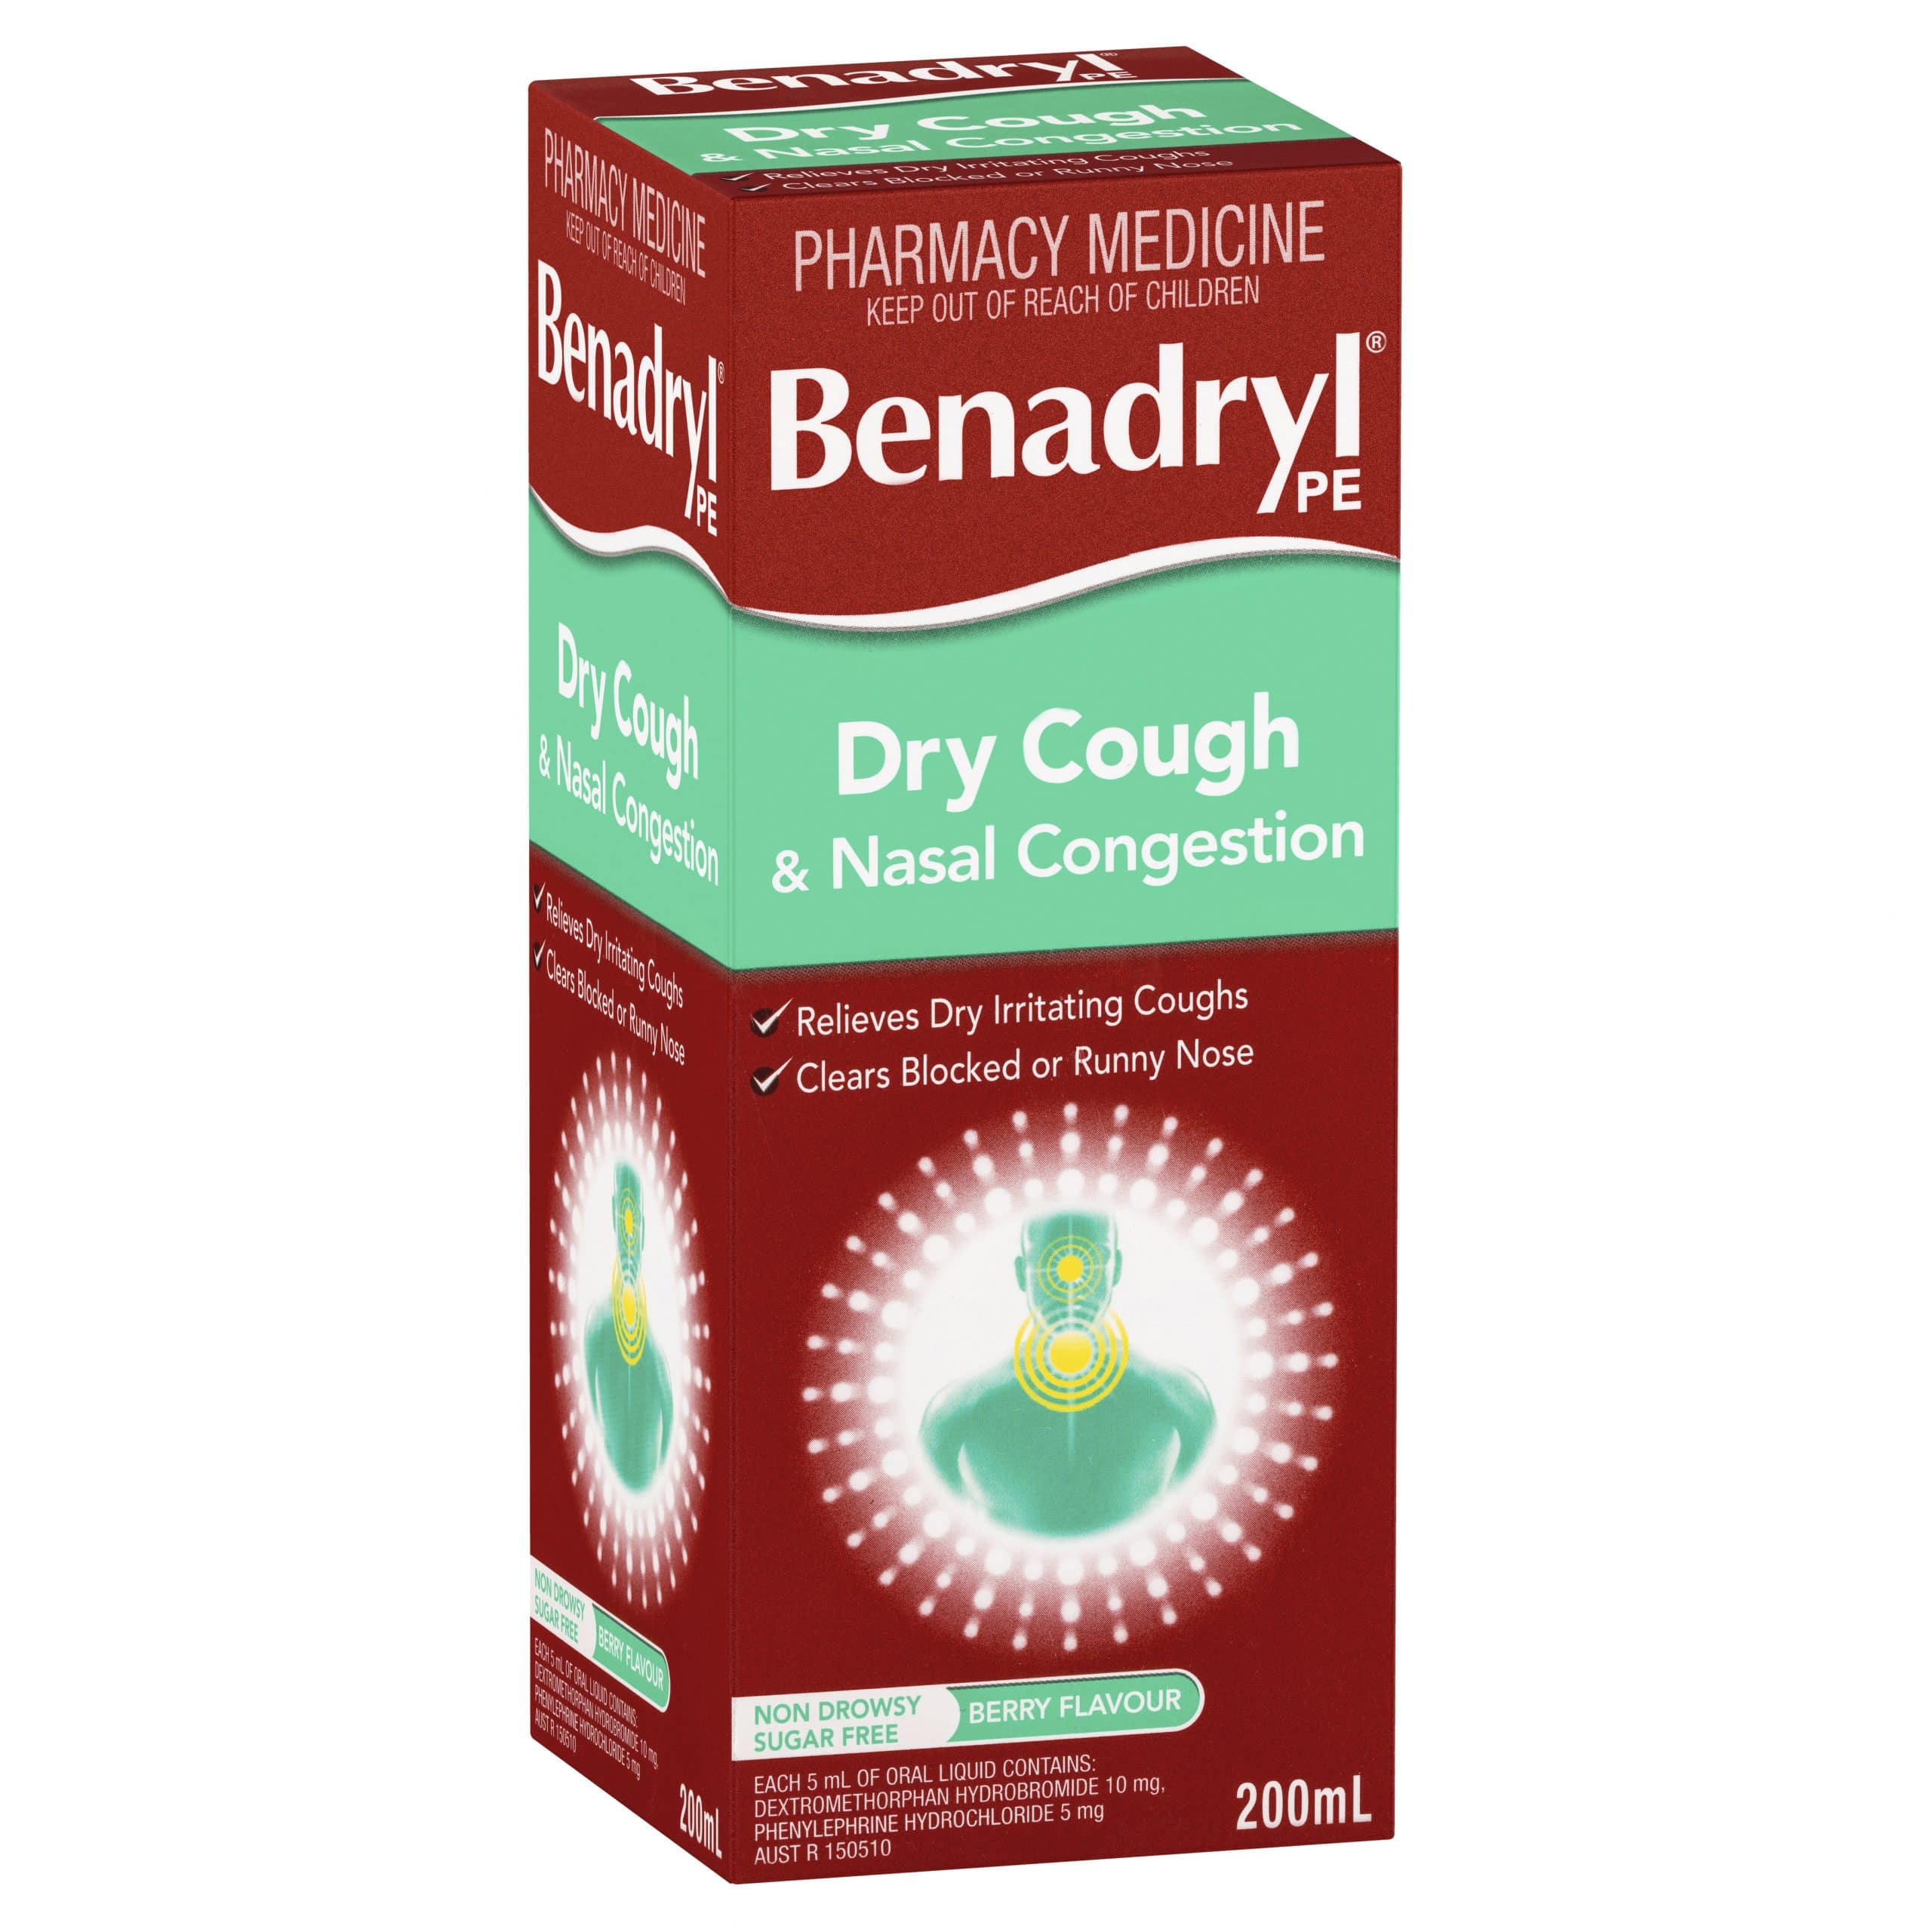 Benadryl PE Dry Cough &  Nasal Decongestant Cough Mixture 200ml